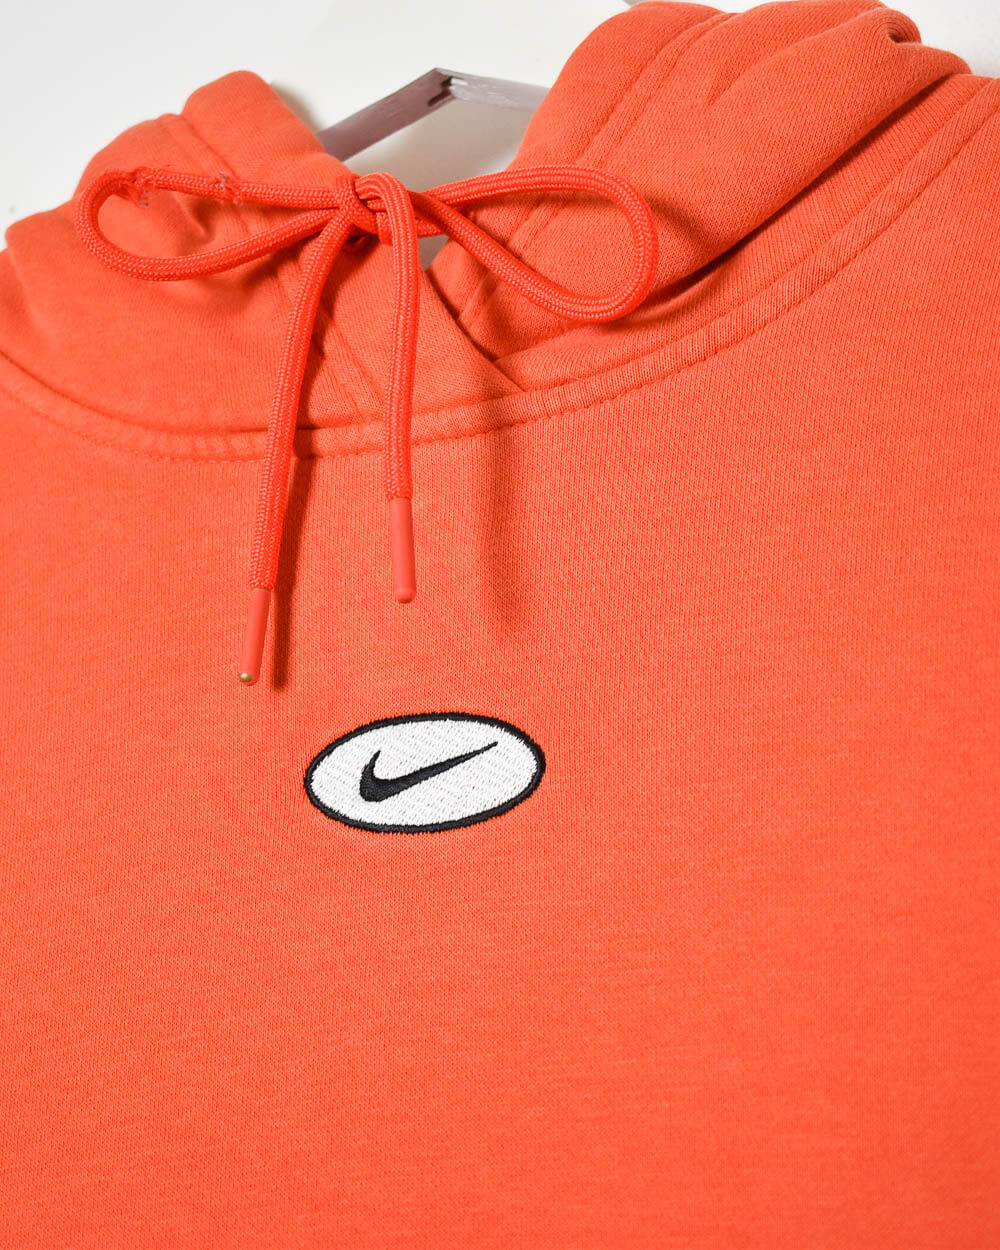 Orange Nike Hoodie - Medium